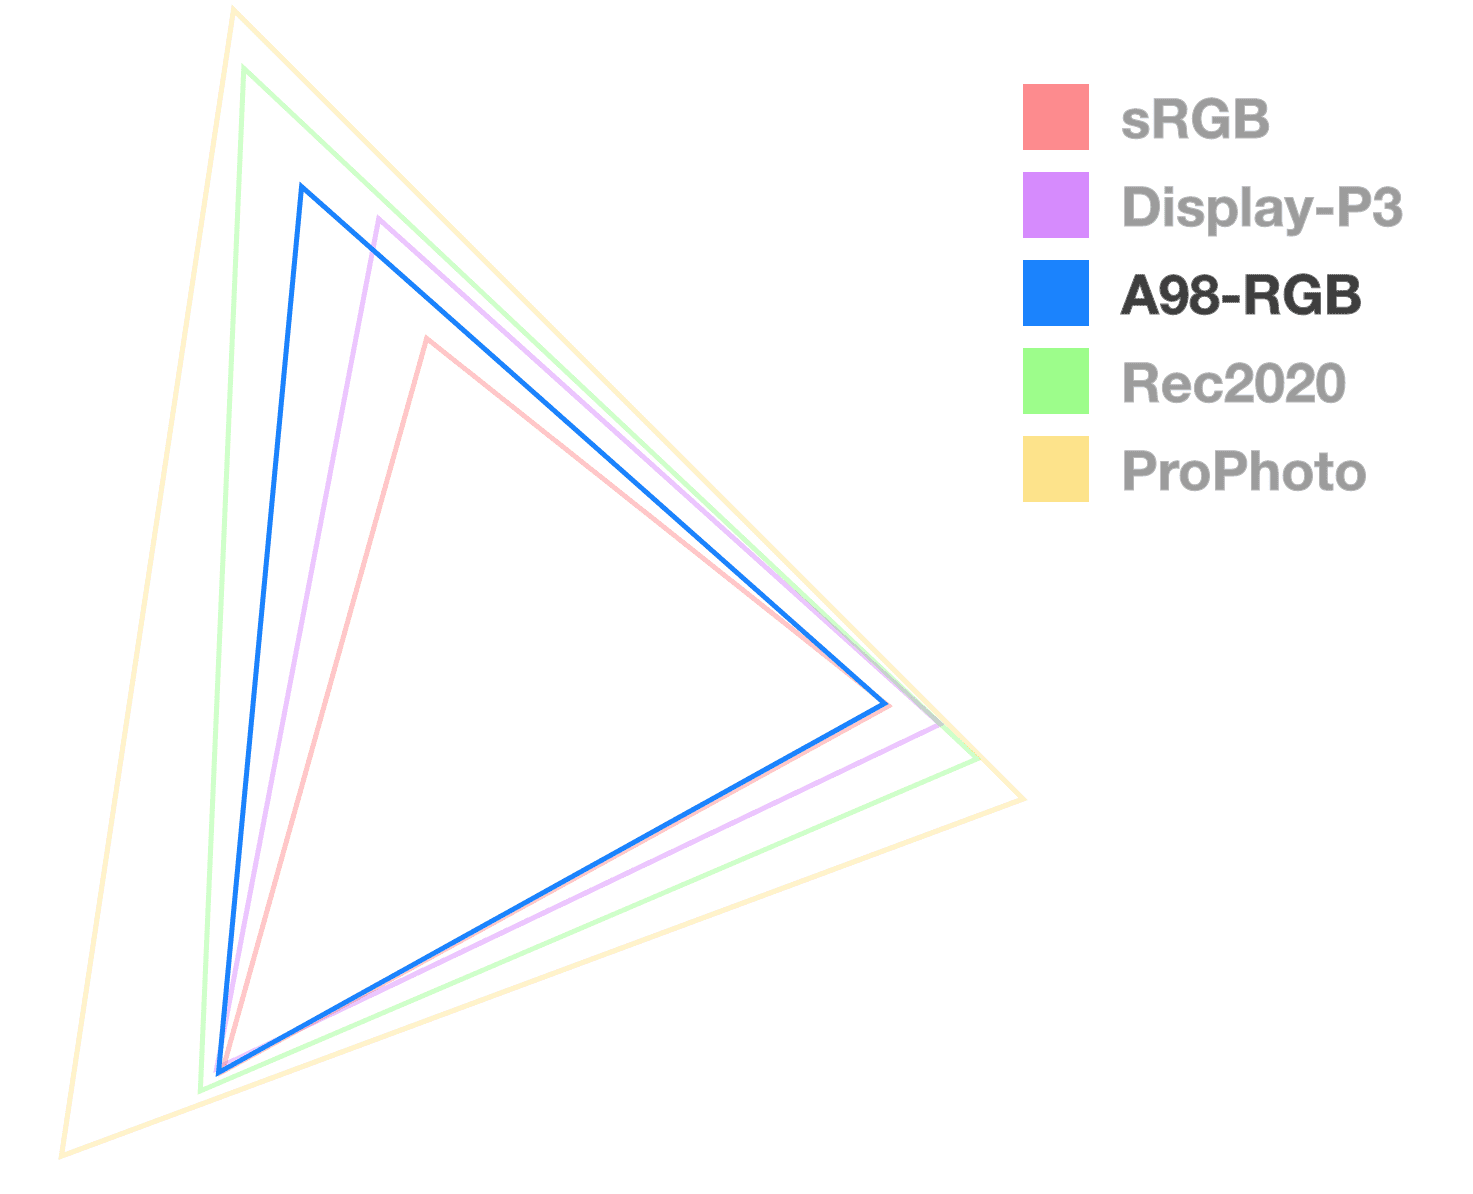 गैमट के साइज़ को विज़ुअलाइज़ करने के लिए, सिर्फ़ A98 ट्राईऐंगल पूरी तरह से ओपेक है. यह बीच वाले आकार में एक त्रिभुज की तरह दिखता है.